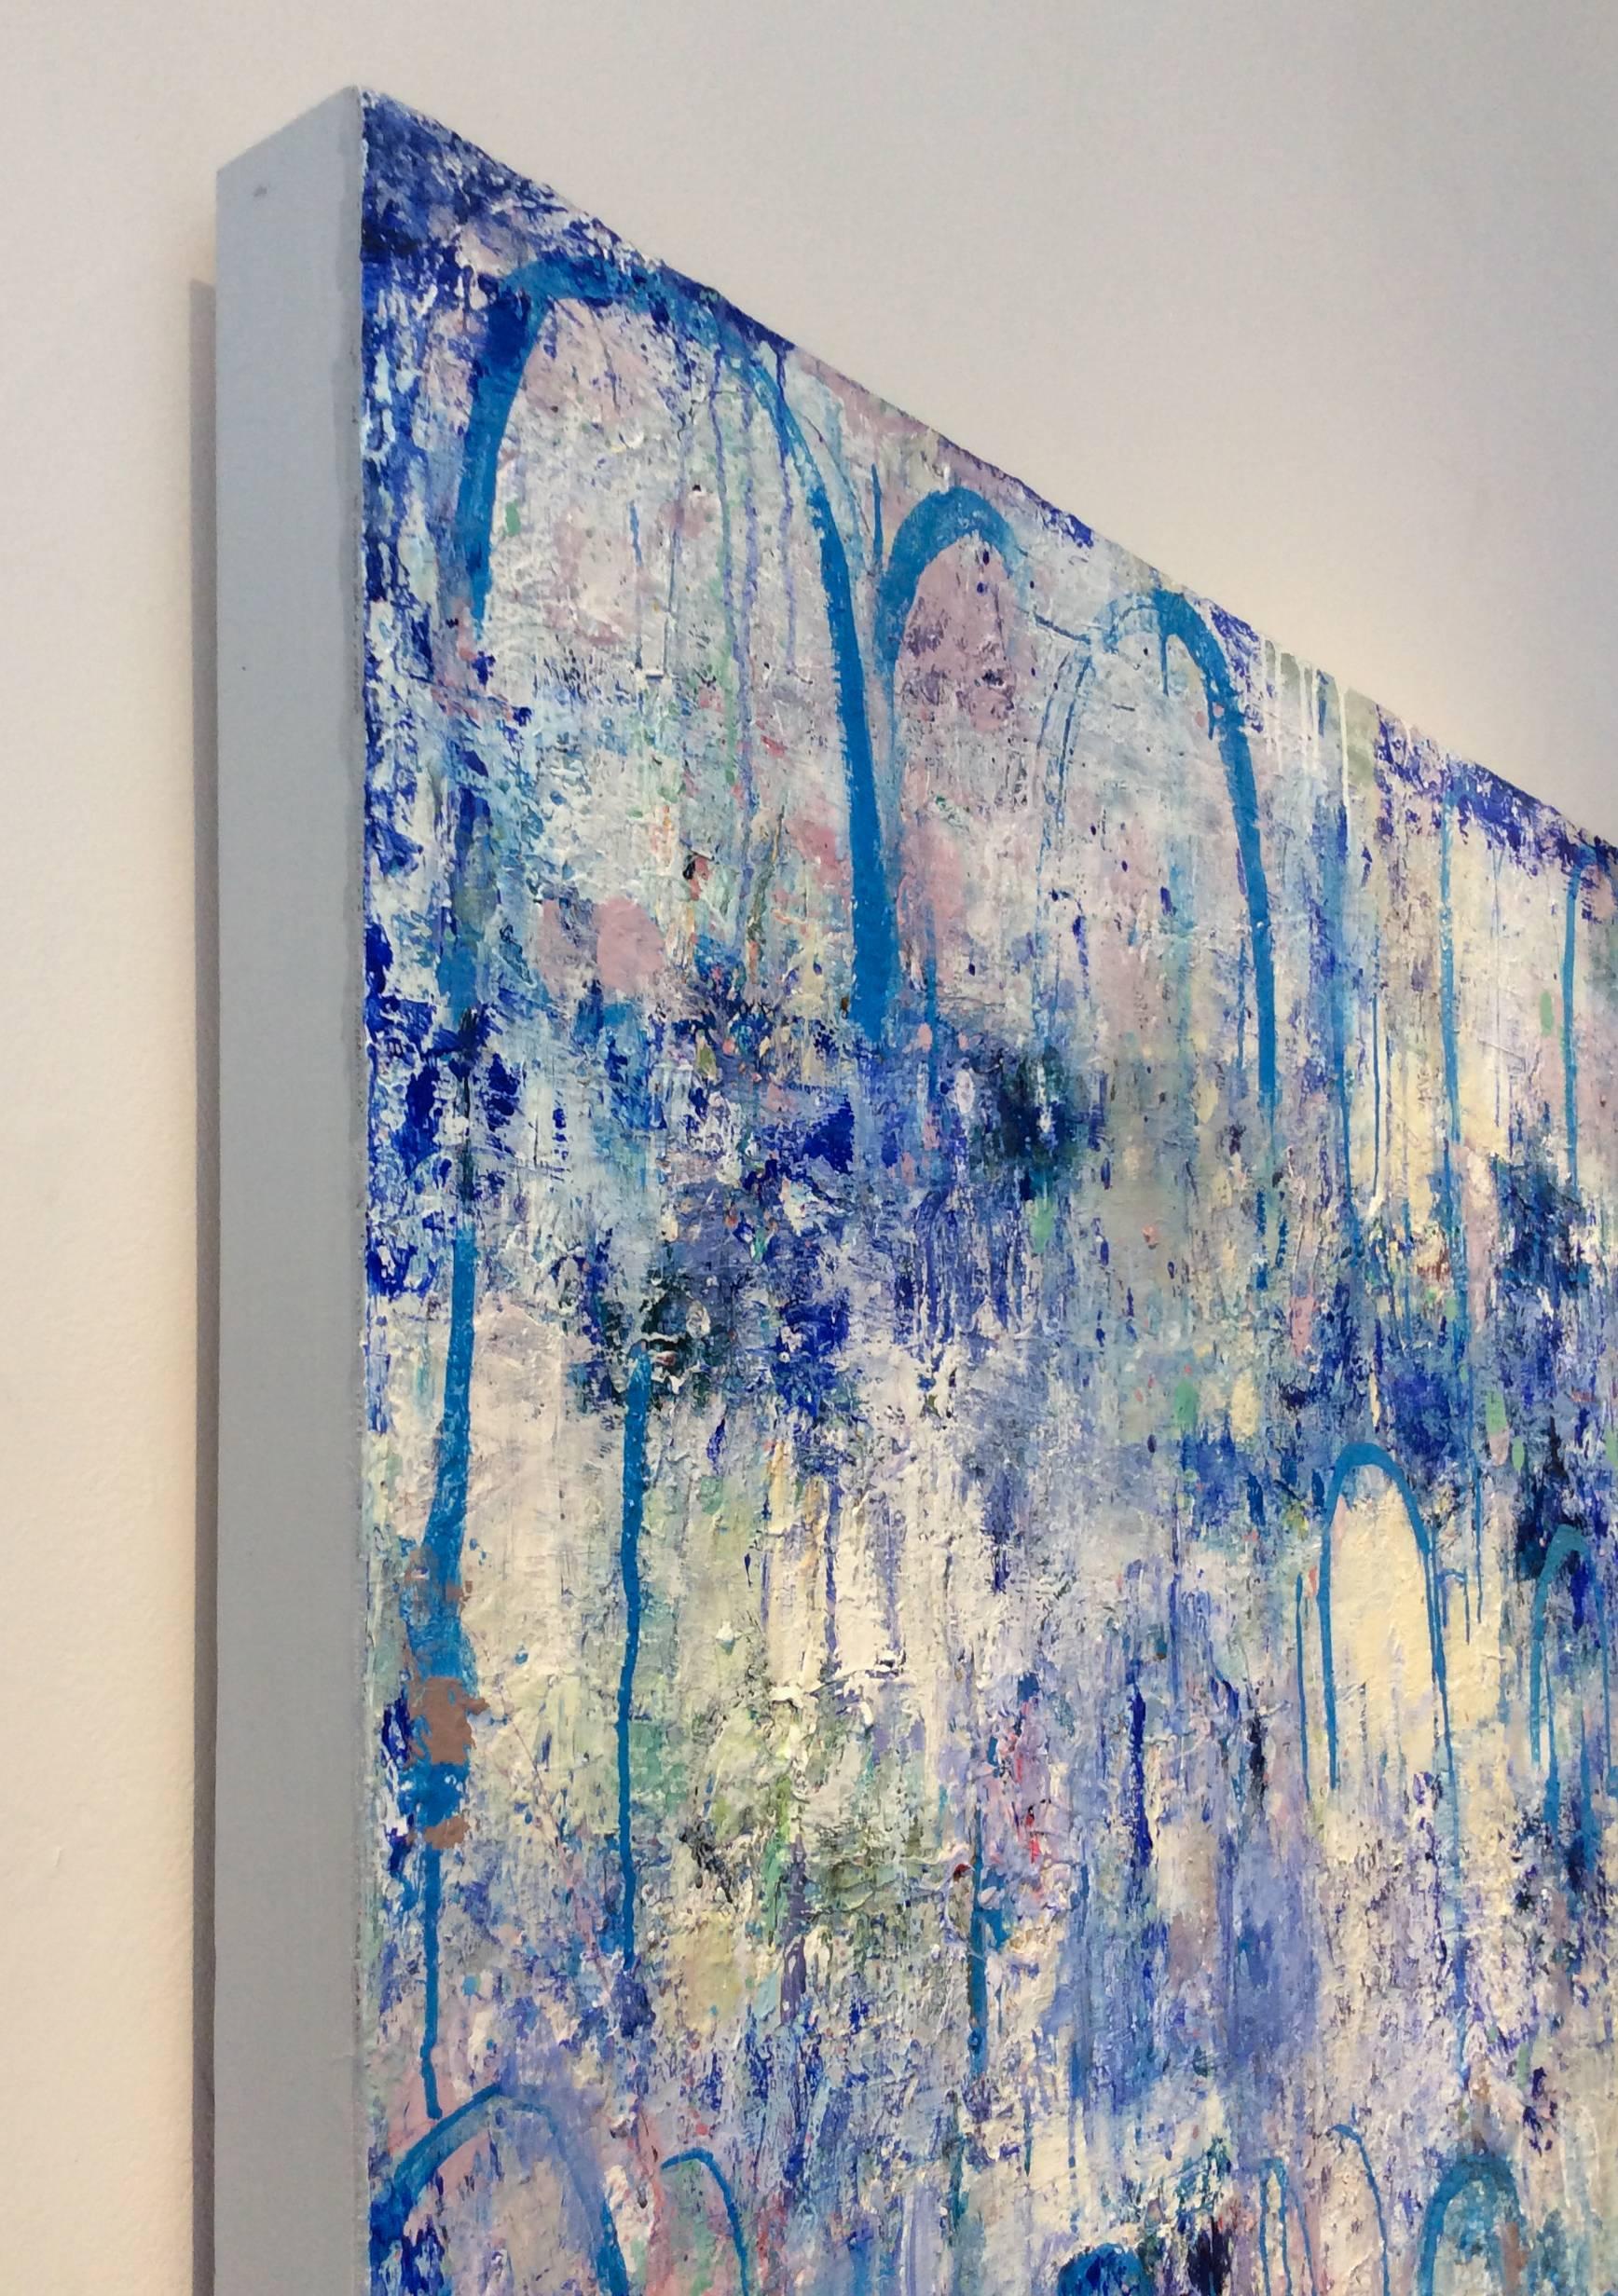 60 x 48 pouces
techniques mixtes et plâtre sur panneau de bois

Cette peinture contemporaine, grande verticale abstraite de style expressionniste et symboliste a été créée par l'artiste basée dans la vallée de l'Hudson, Ragellah Rourke en 2016. Cet